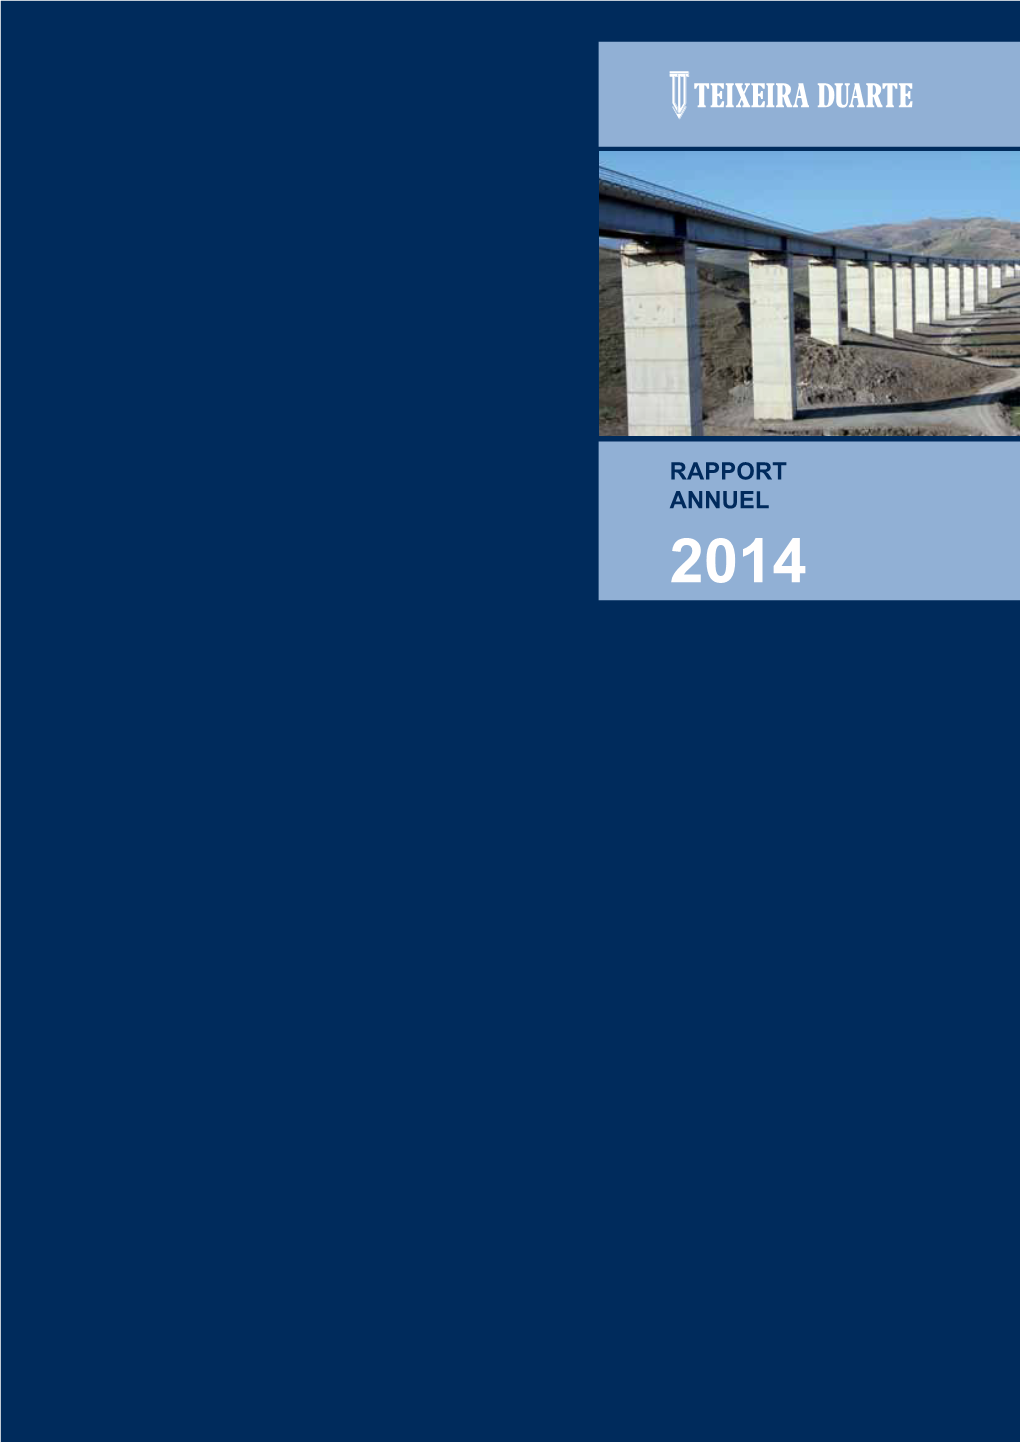 RAPPORT ANNUEL 2014 Couverture : Thénia - Tizi Ouzou | Algérie Rapport Annuel 2014 Teixeira Duarte, S.A